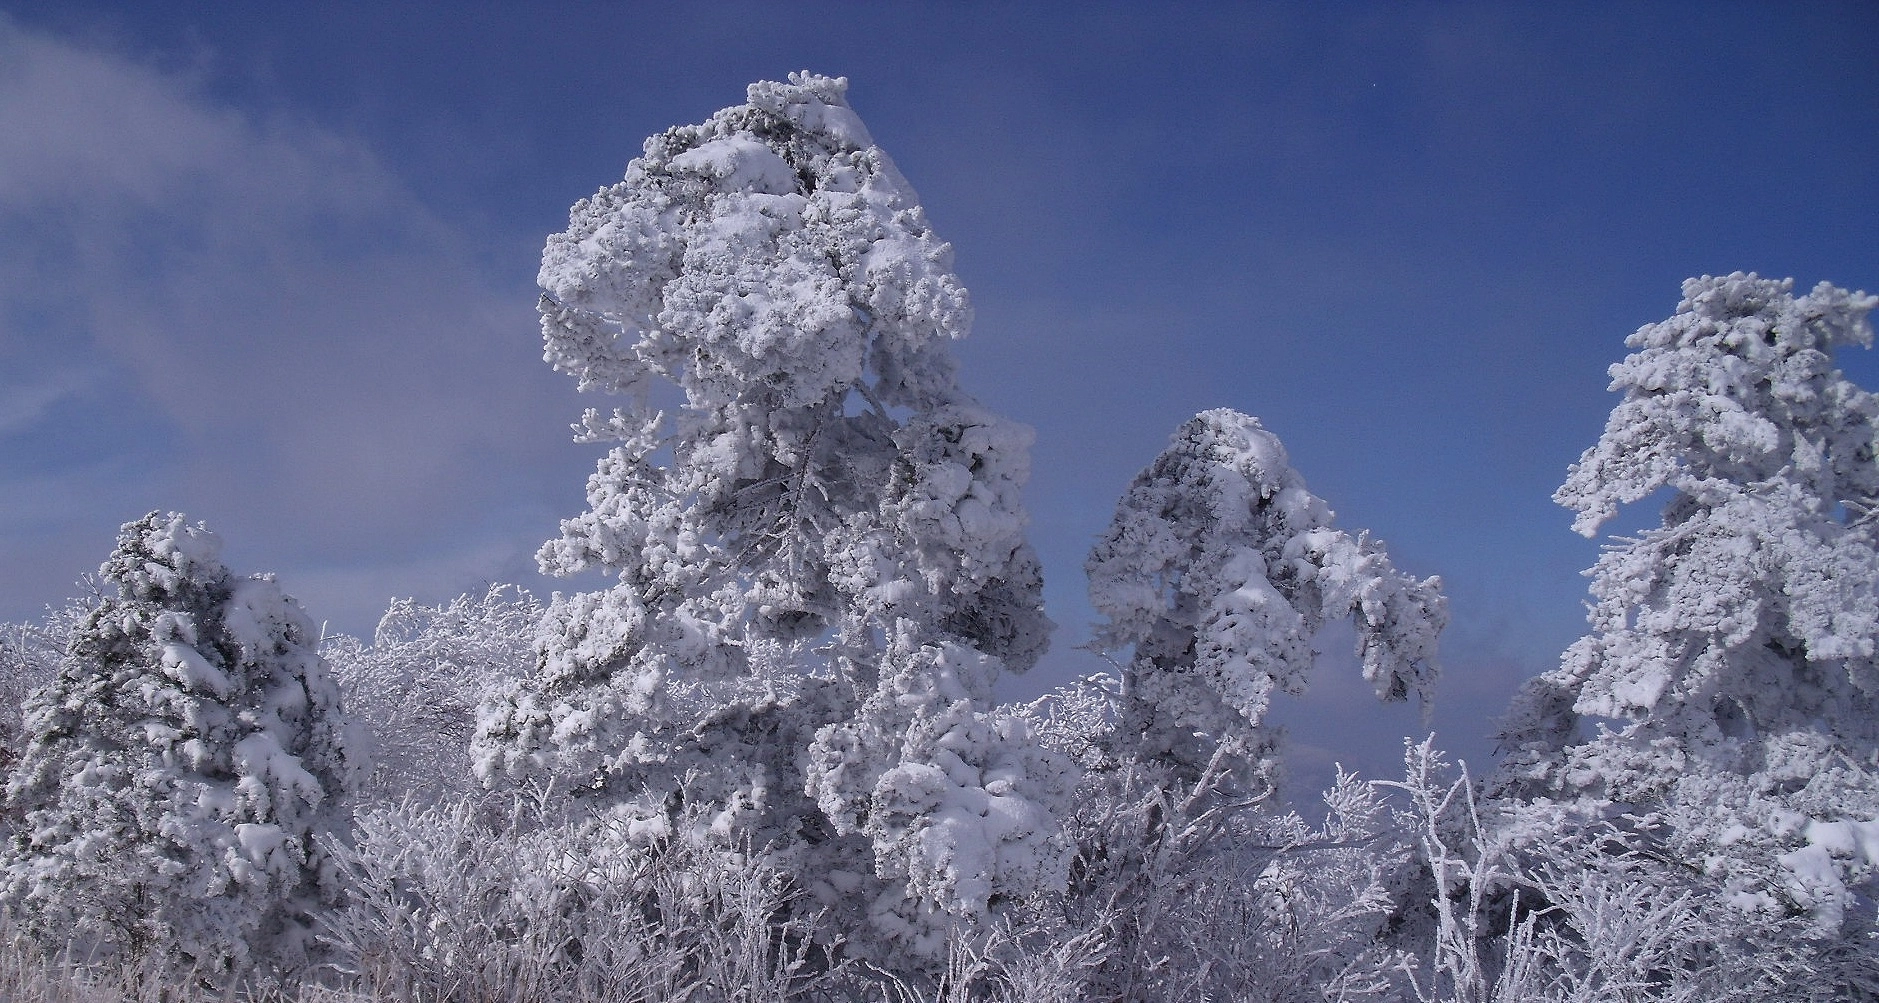 Fujifilm FinePix J110W sample photo. Snow & frost photography